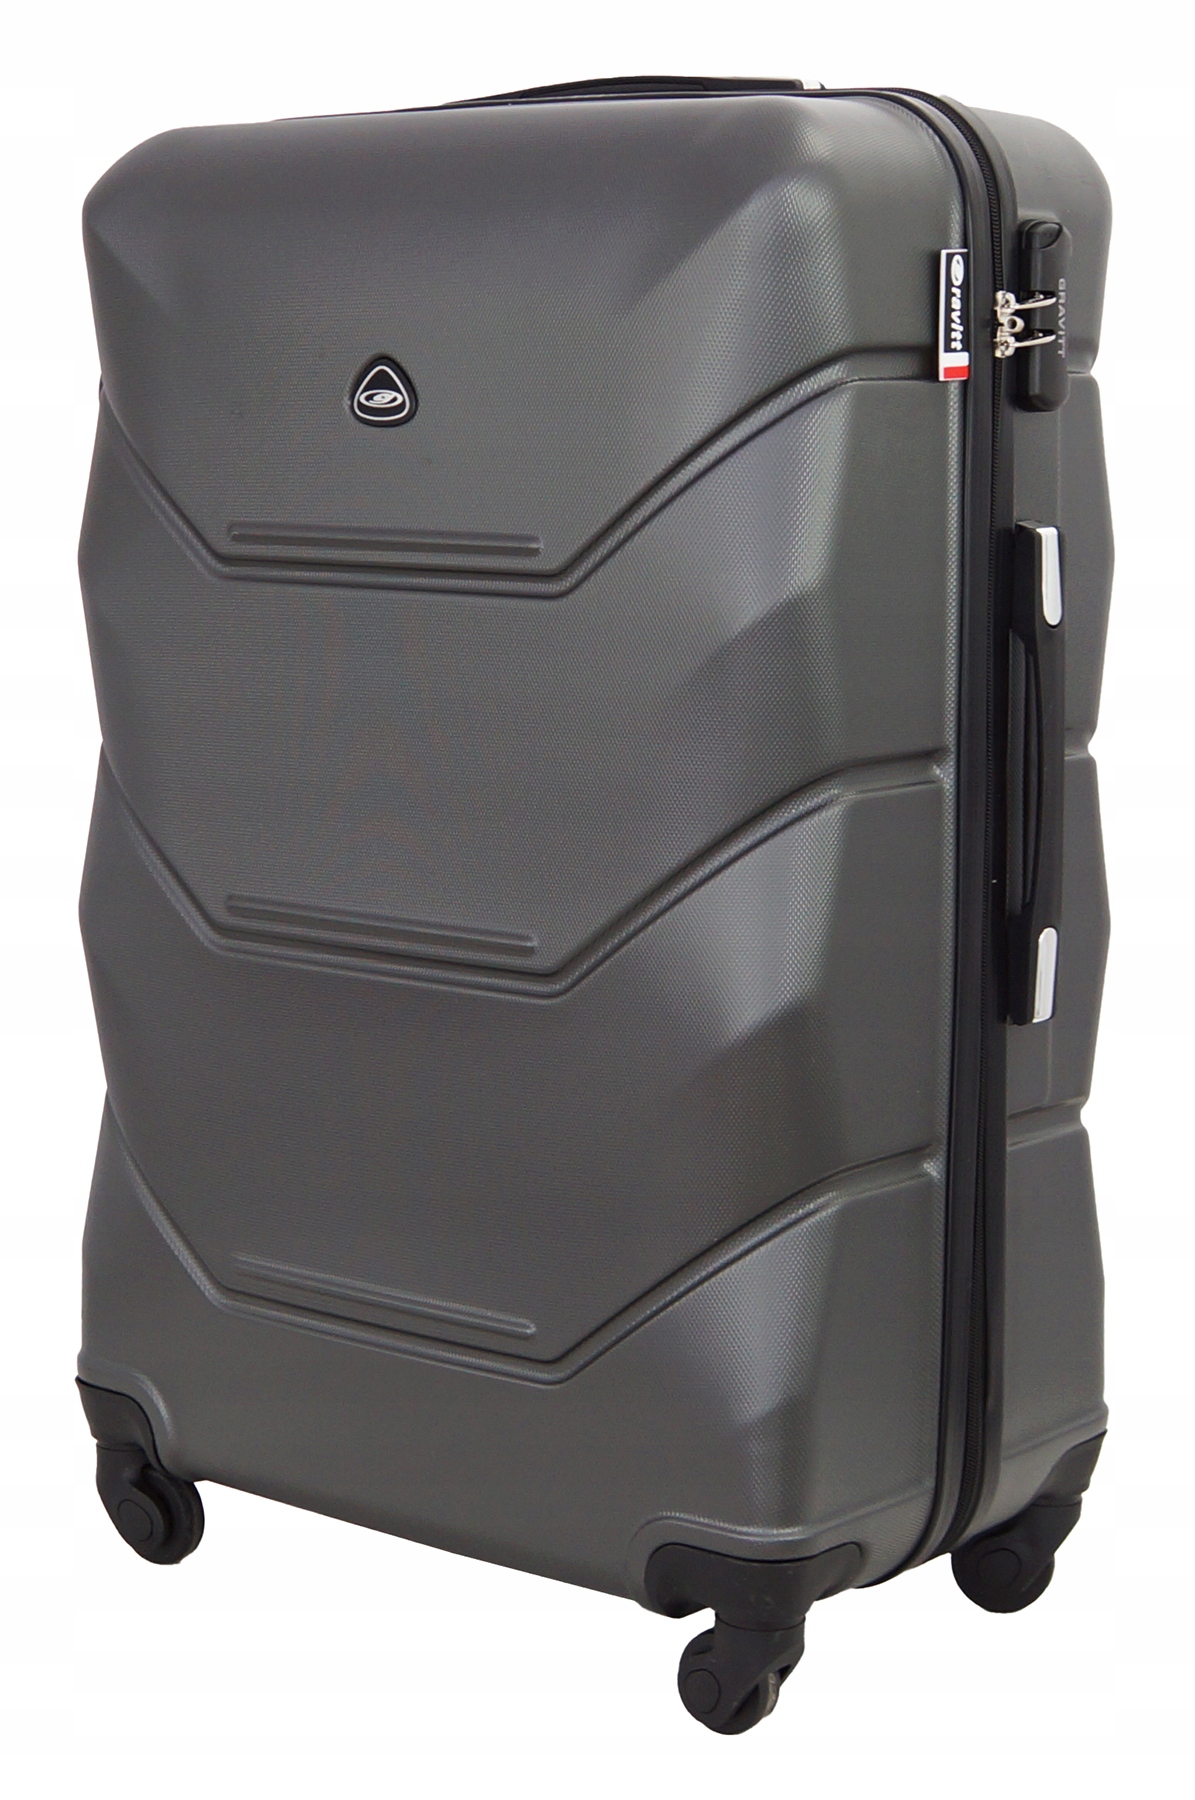 MEDIUM SUITCASE XL -matkatavaralentokoneen MALLI 950